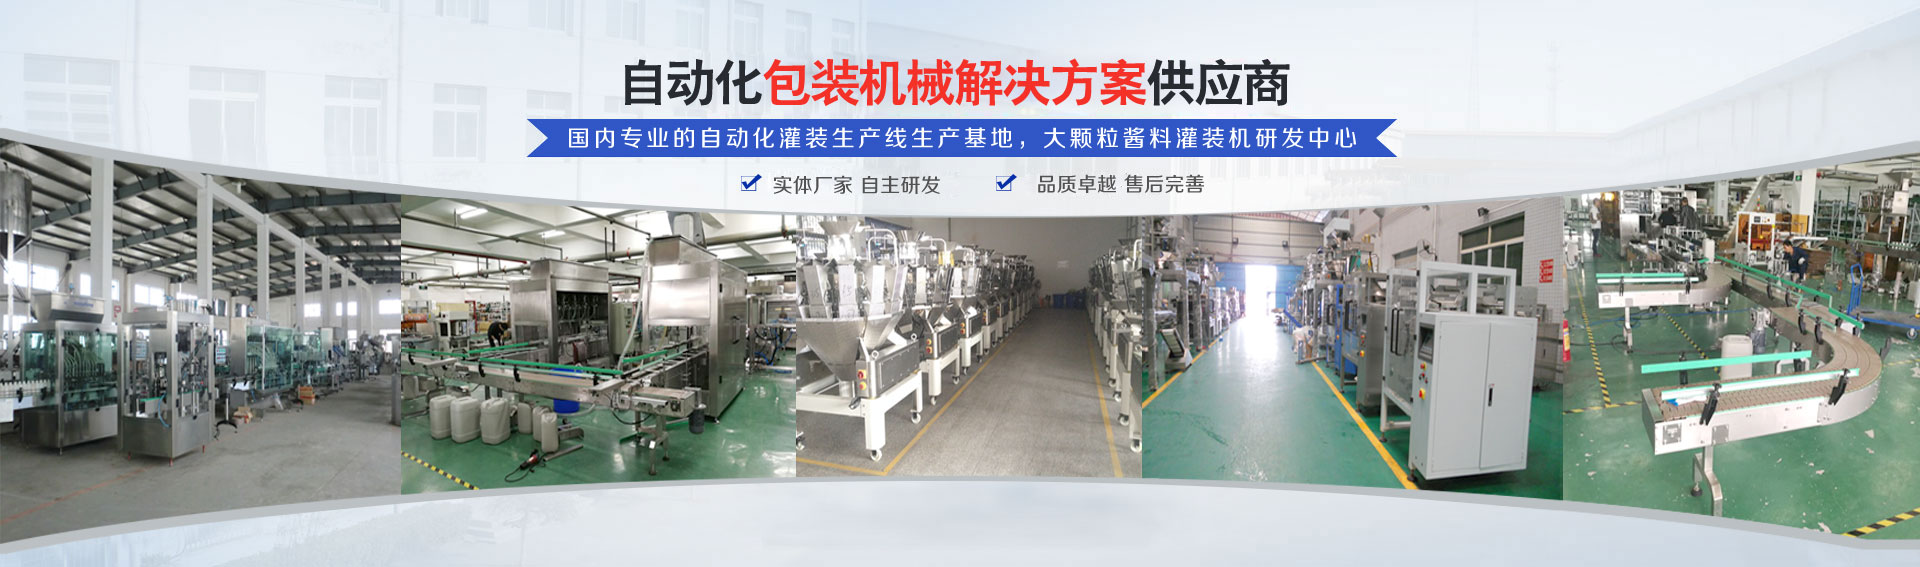 专业的自动化灌装机生产(chan)线(xian)研发(fa)基地